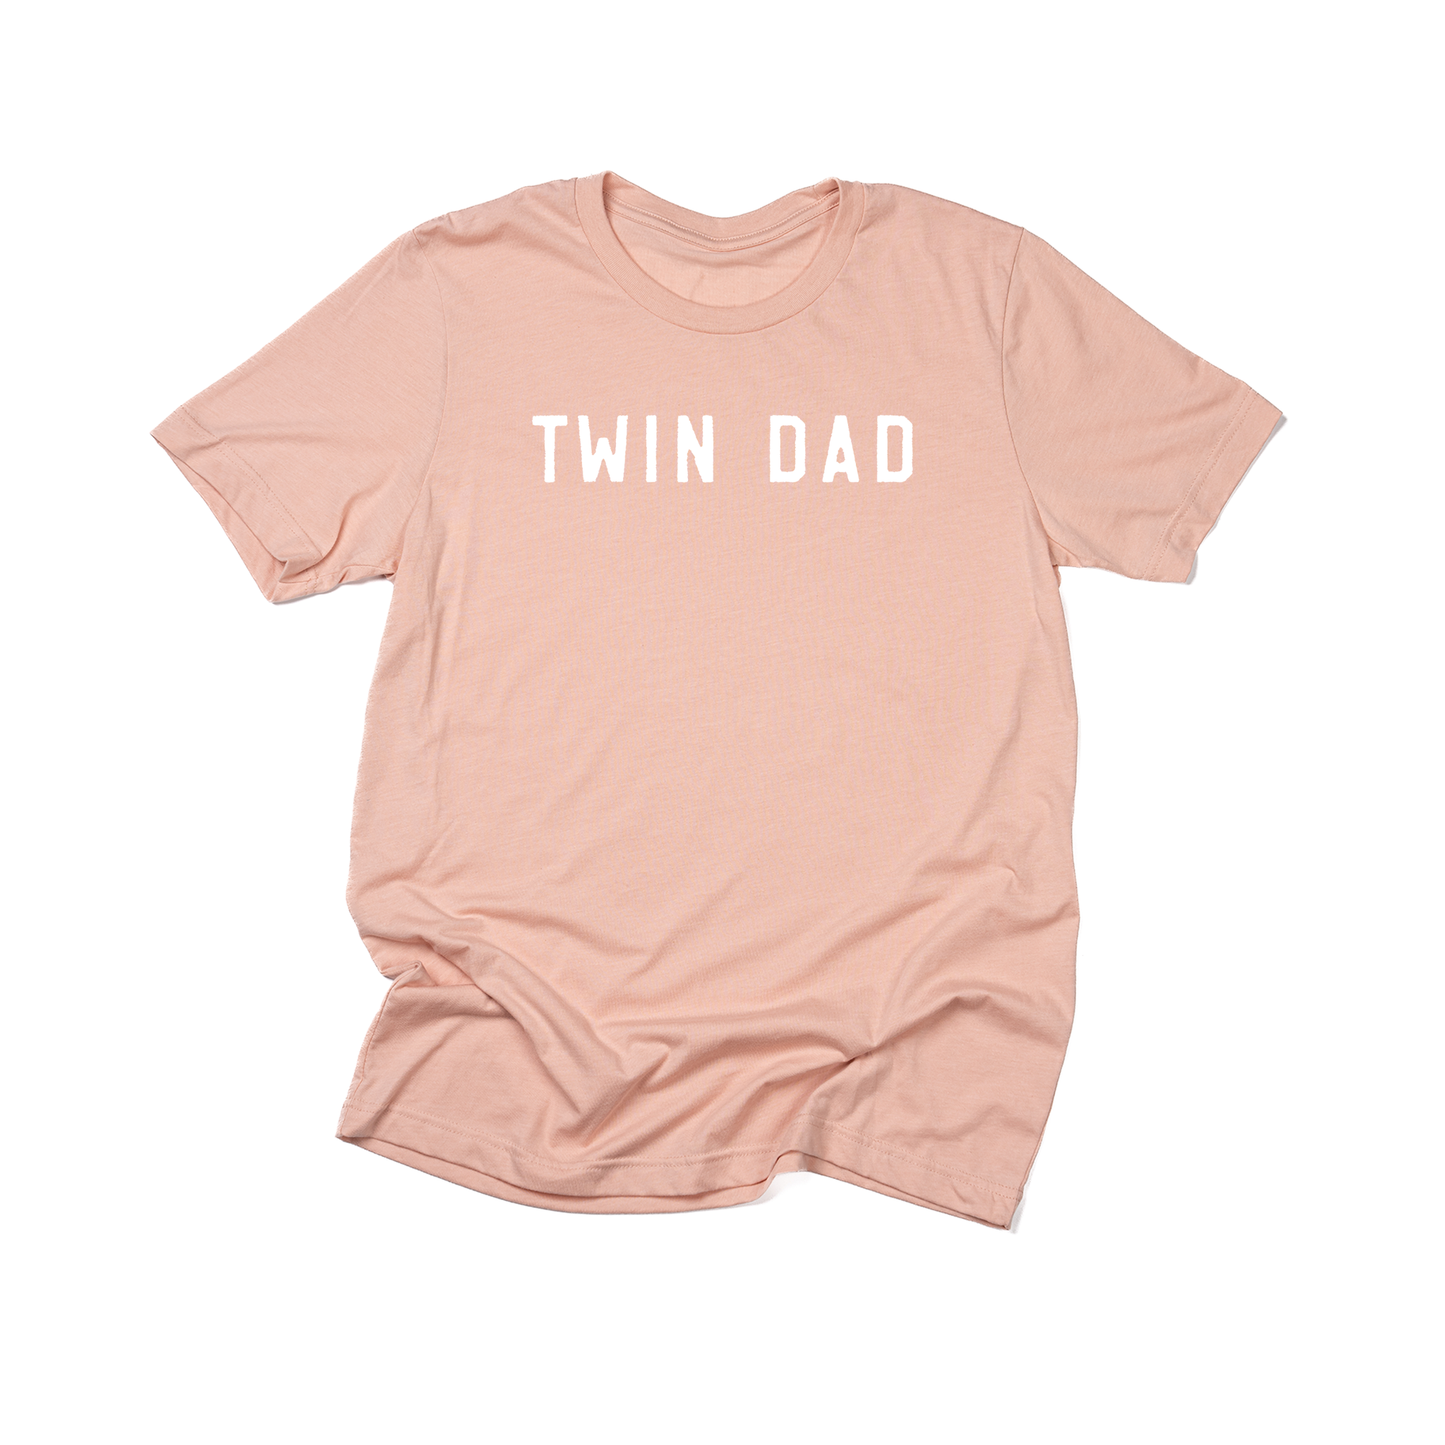 Twin Dad (White) - Tee (Peach)